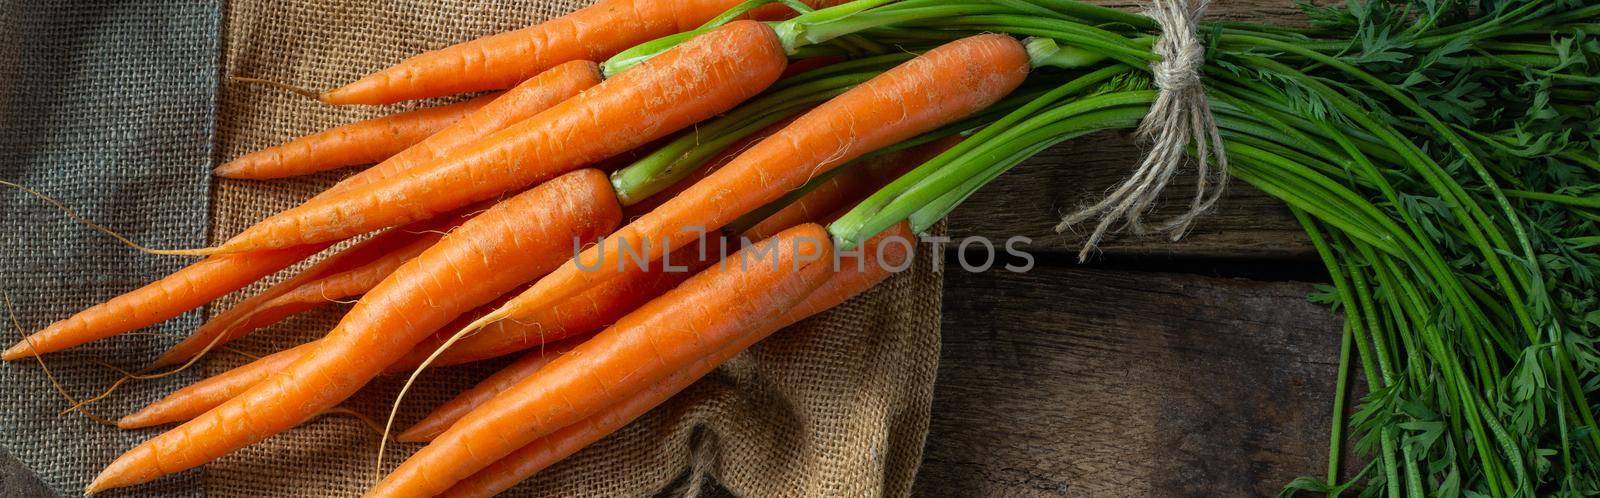 freshly picked vegetables carrots by NelliPolk